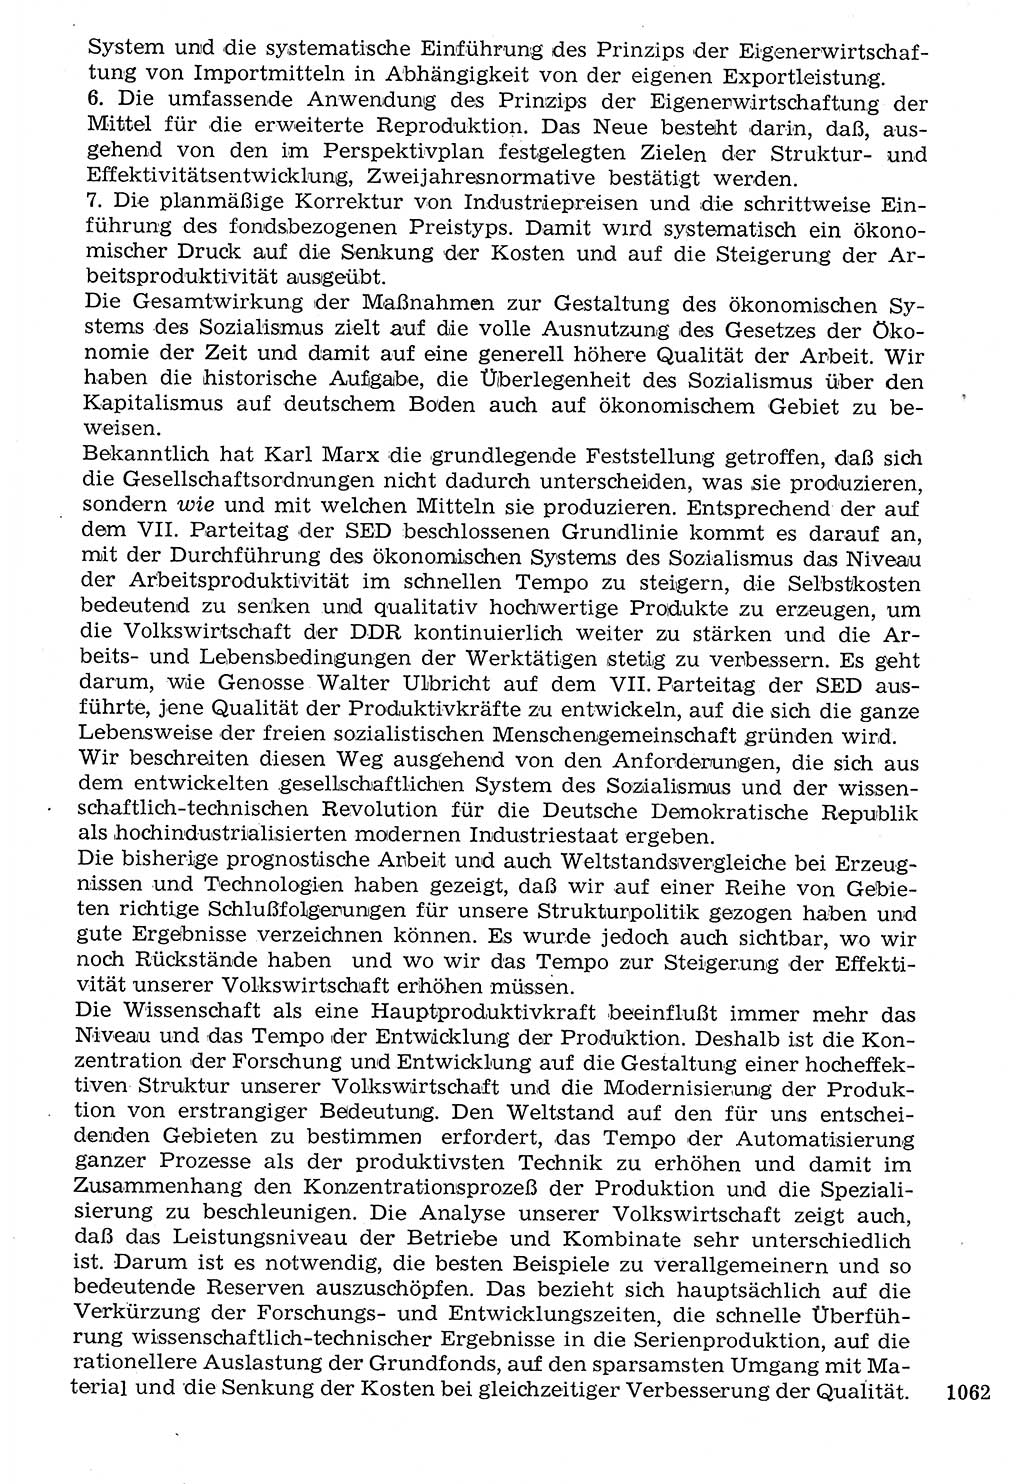 Staat und Recht (StuR), 17. Jahrgang [Deutsche Demokratische Republik (DDR)] 1968, Seite 1062 (StuR DDR 1968, S. 1062)